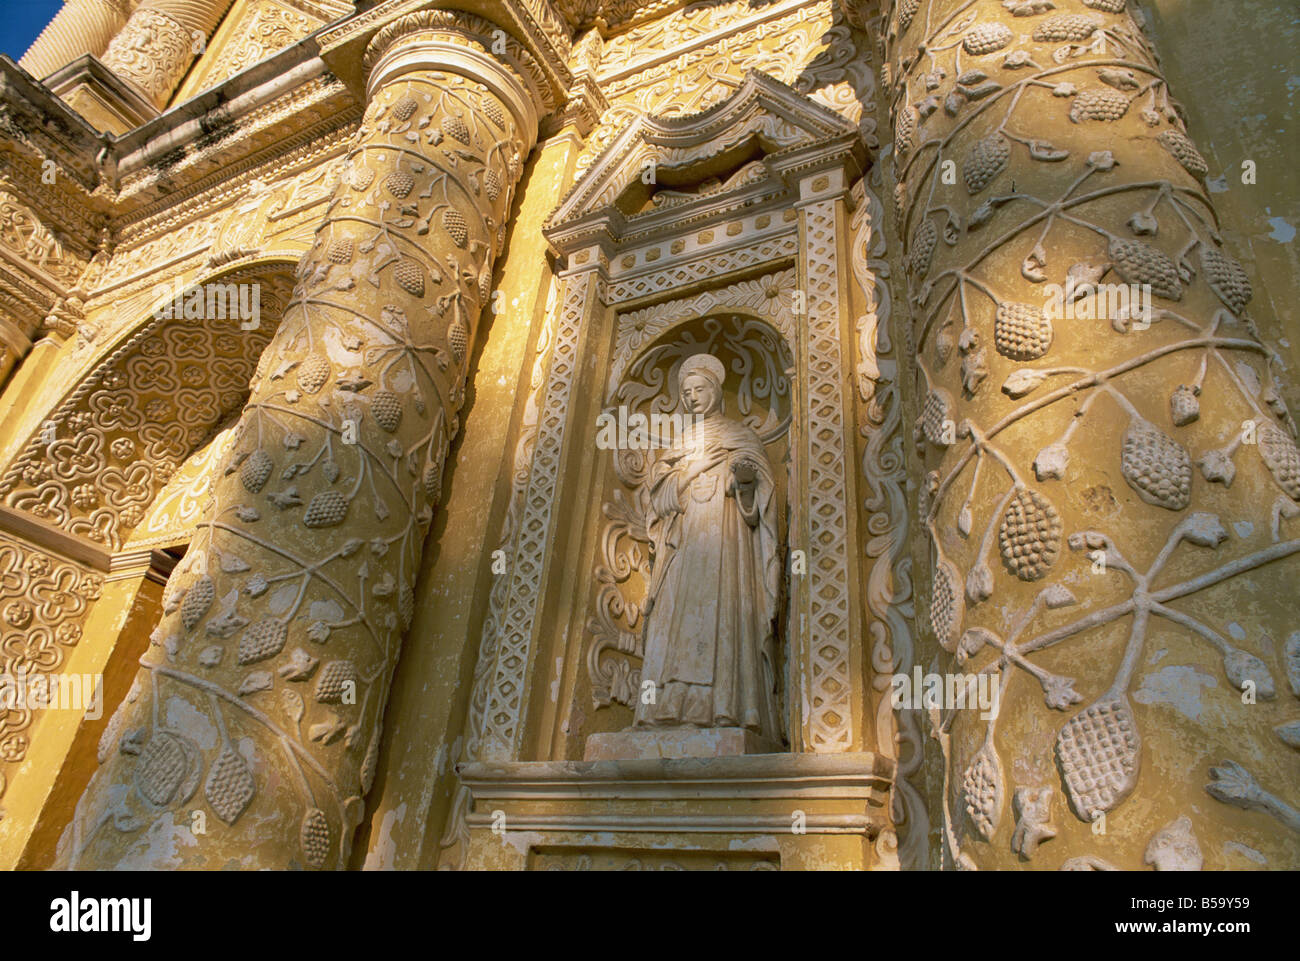 Dettaglio sulla facciata della chiesa di La Merced, Antigua, Sito Patrimonio Mondiale dell'UNESCO, Guatemala, America Centrale Foto Stock